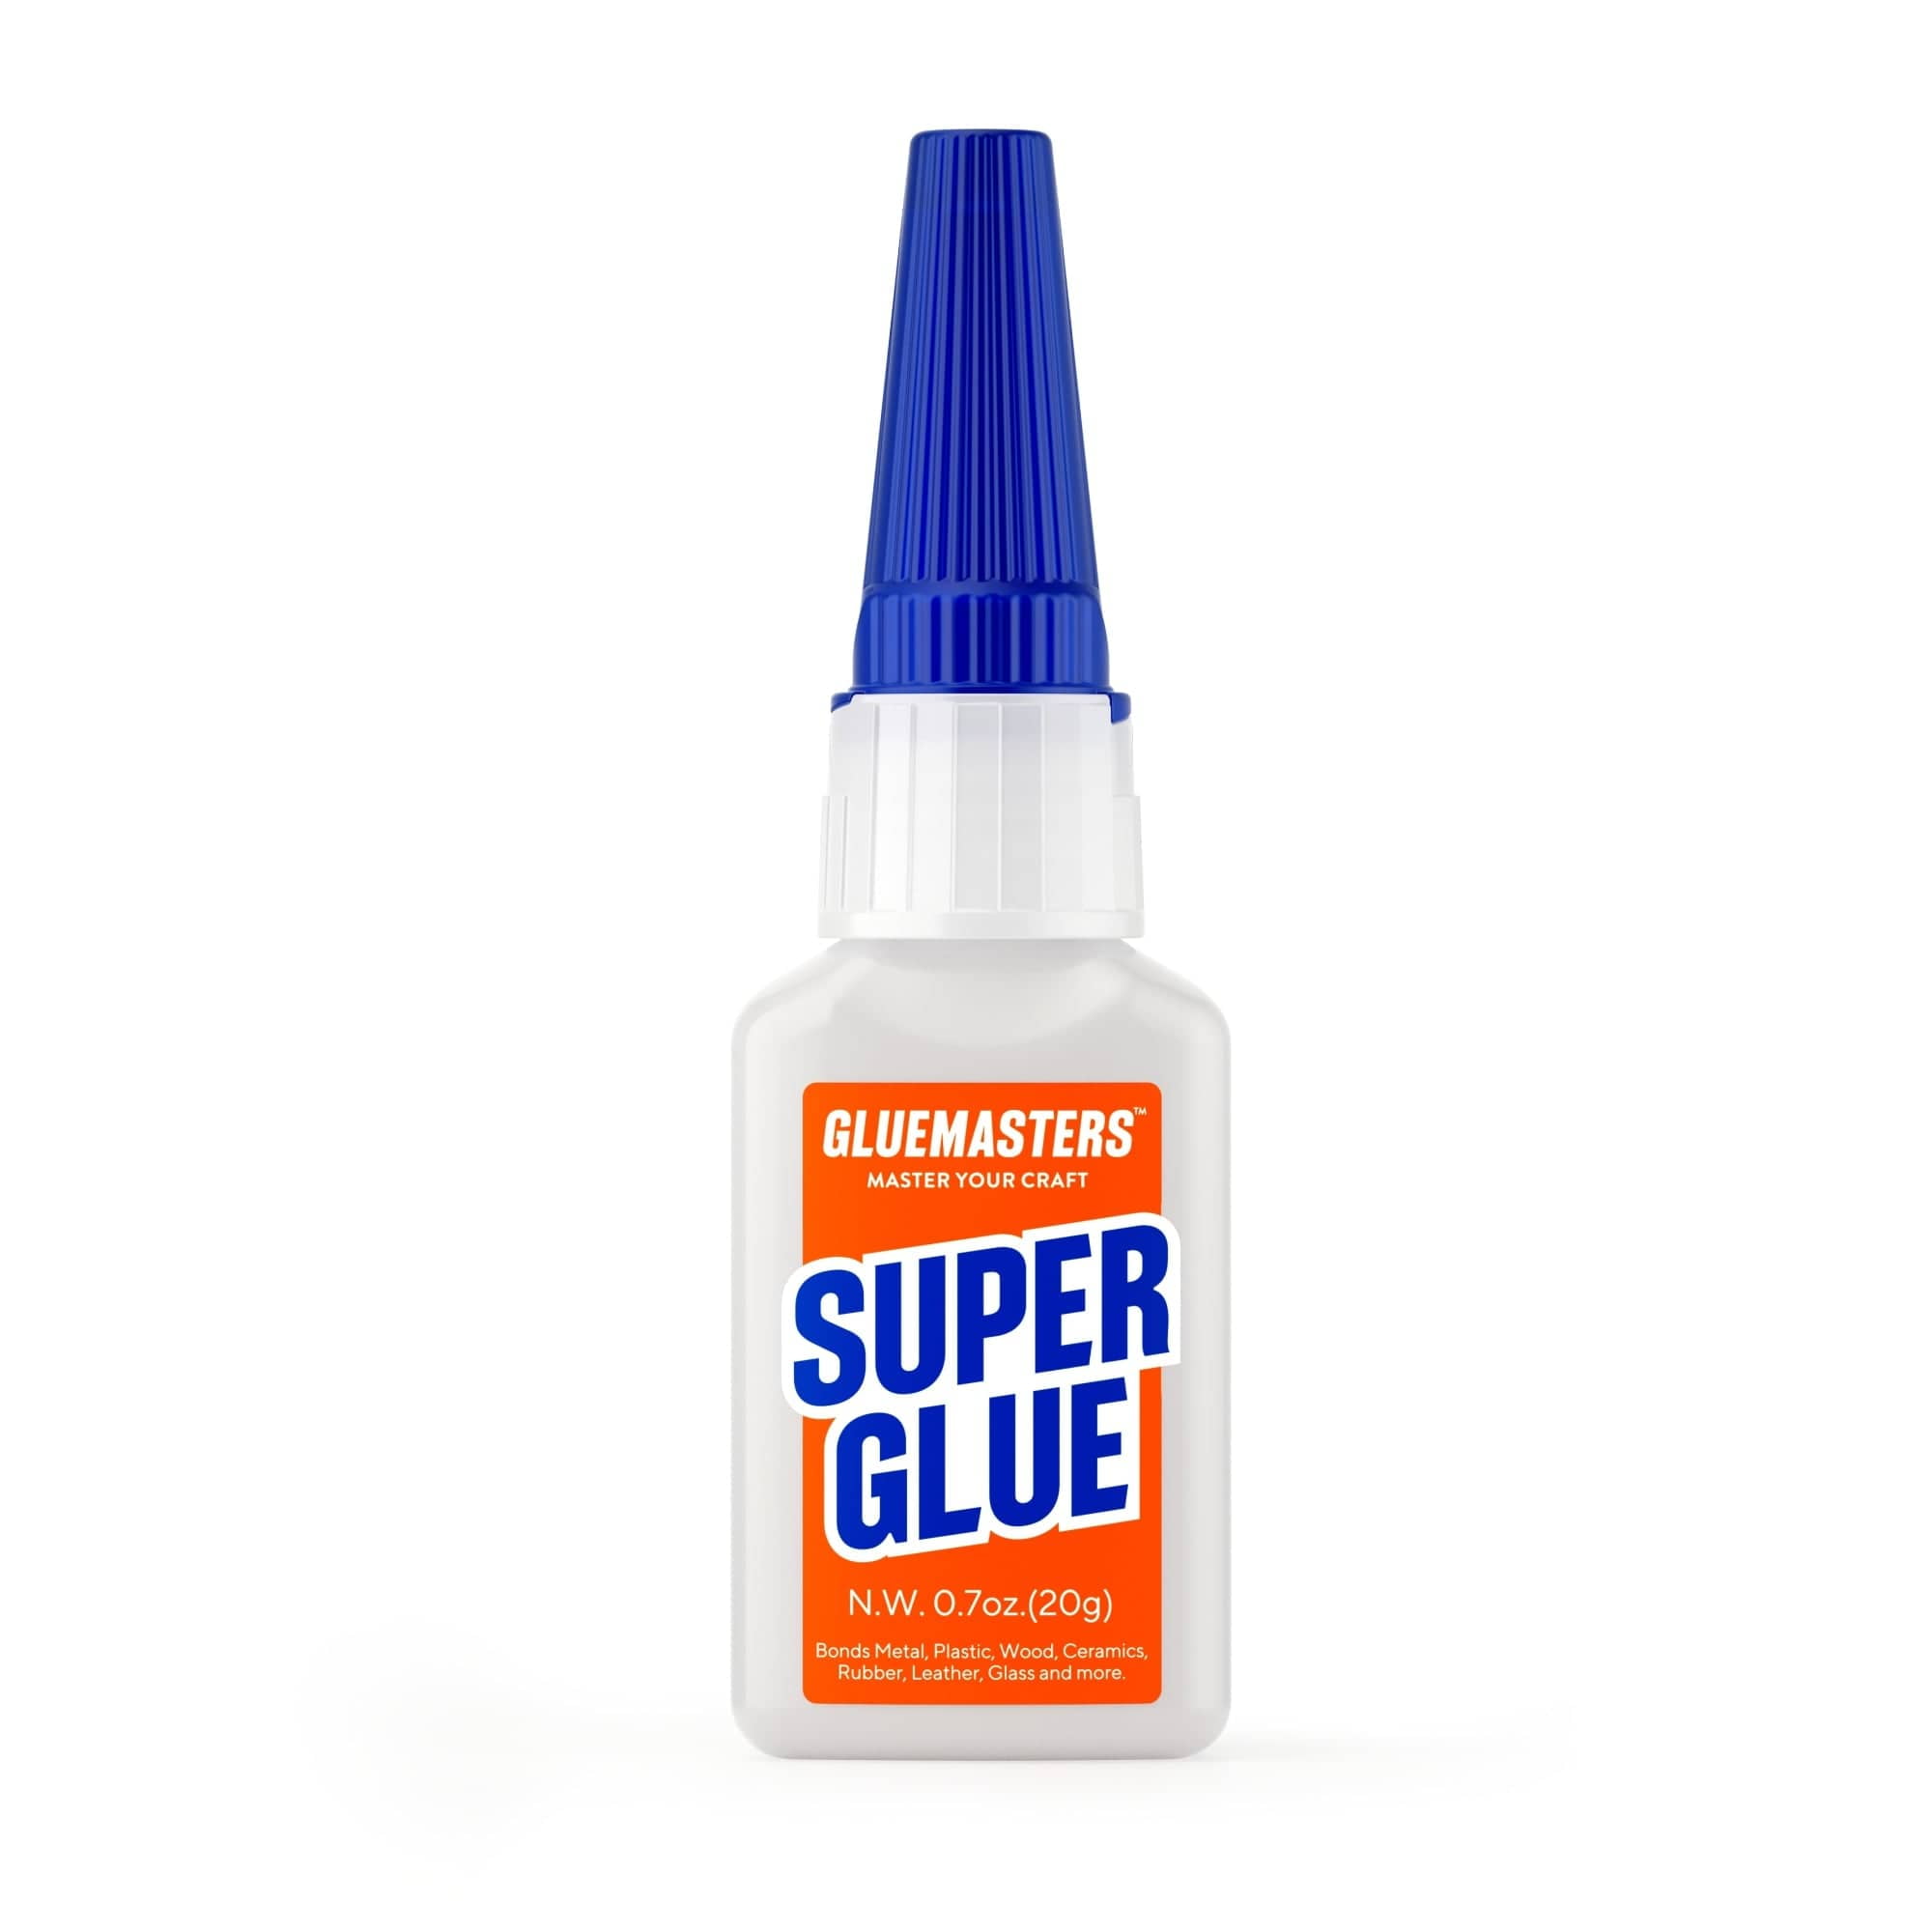 Krazy Glue, Craft Super Glue, Extended Tip, 5 g 